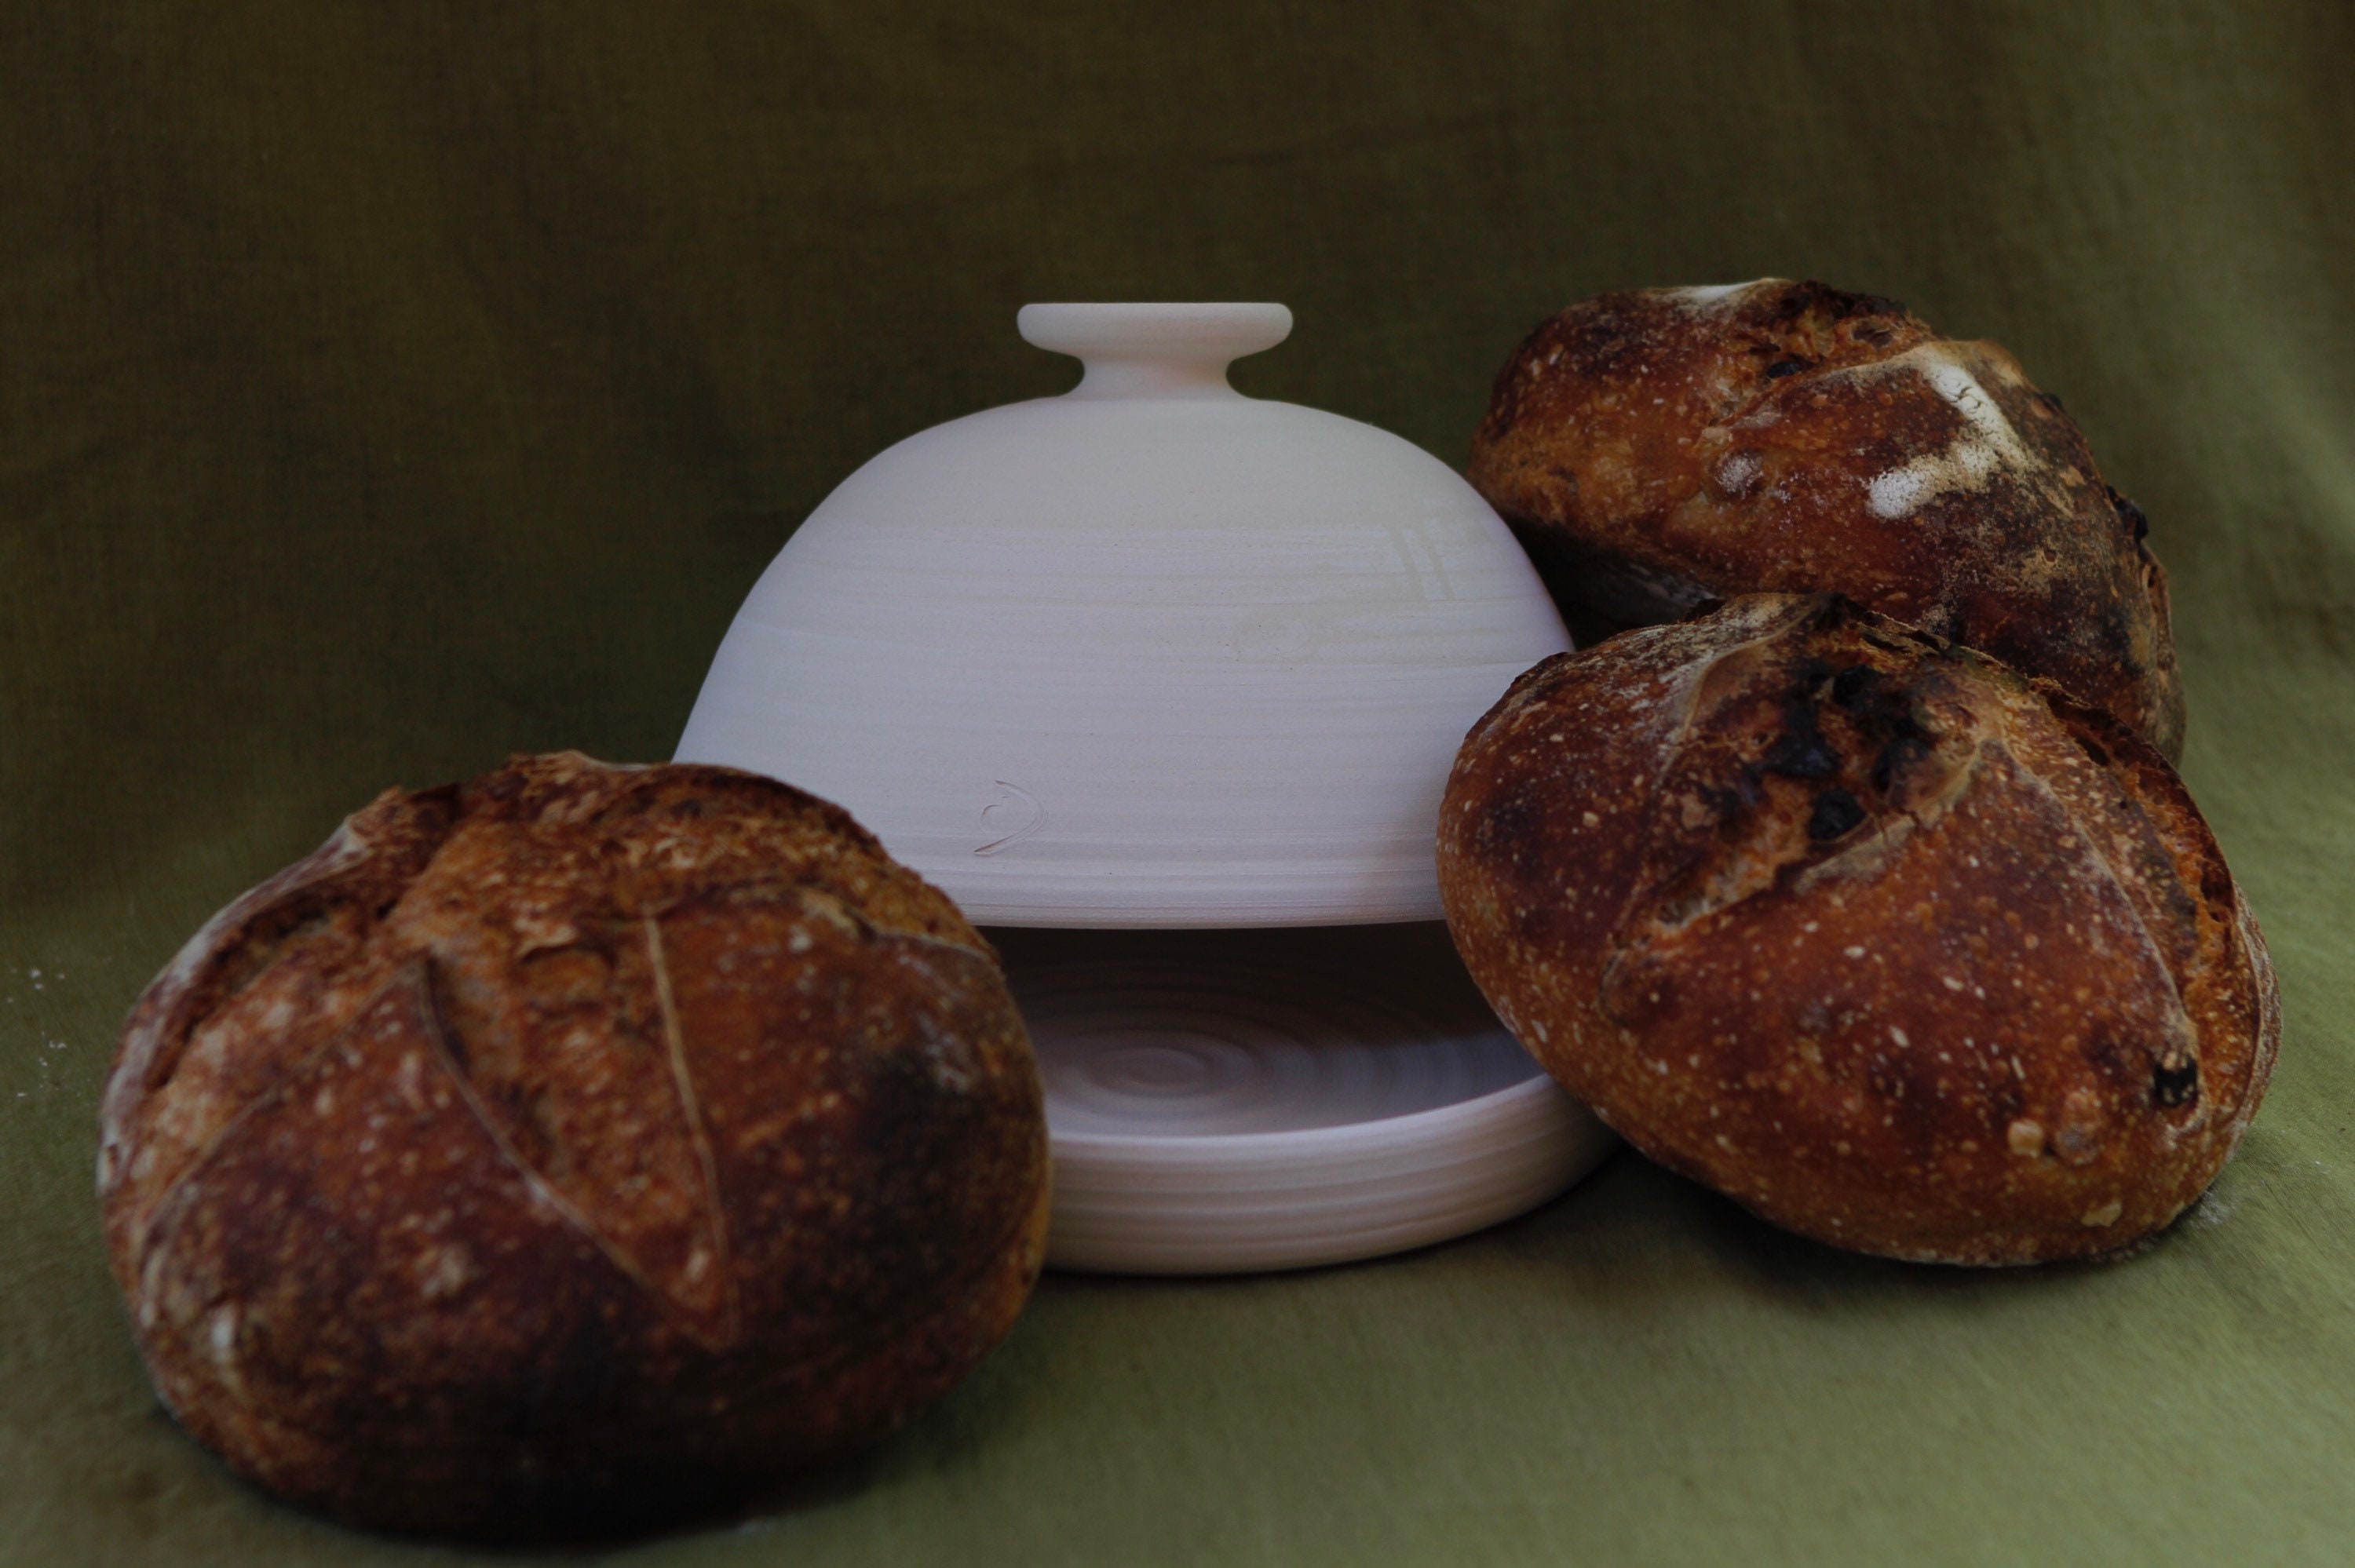 Stoneware La Cloche® Glazed Bread Baker